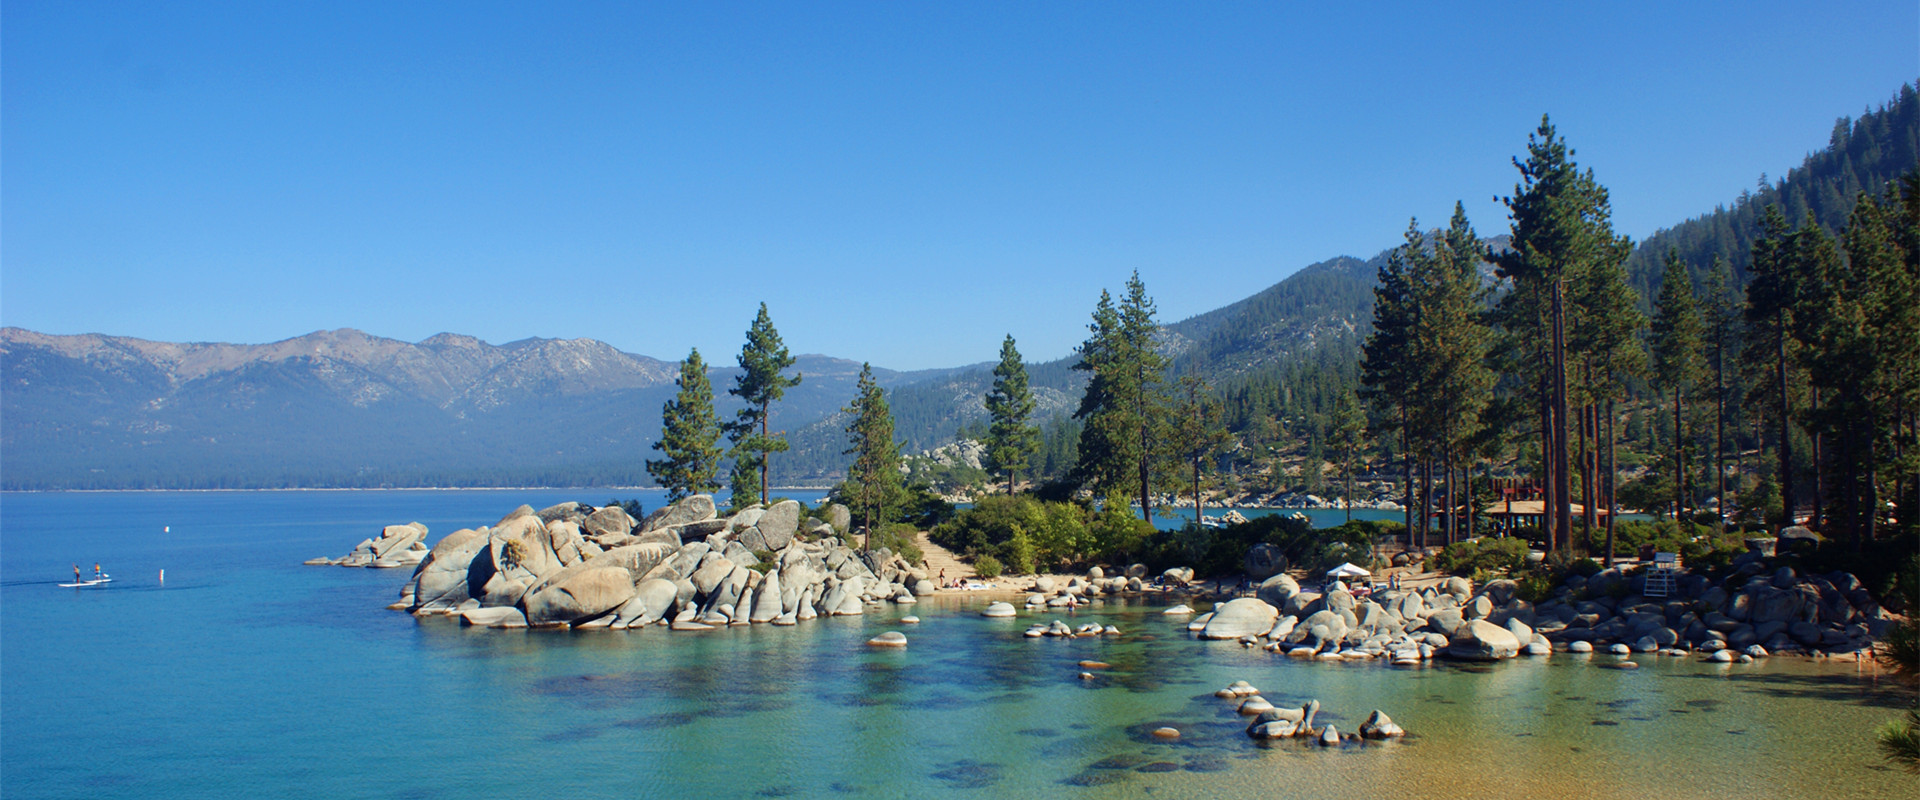 太浩湖 Lake Tahoe